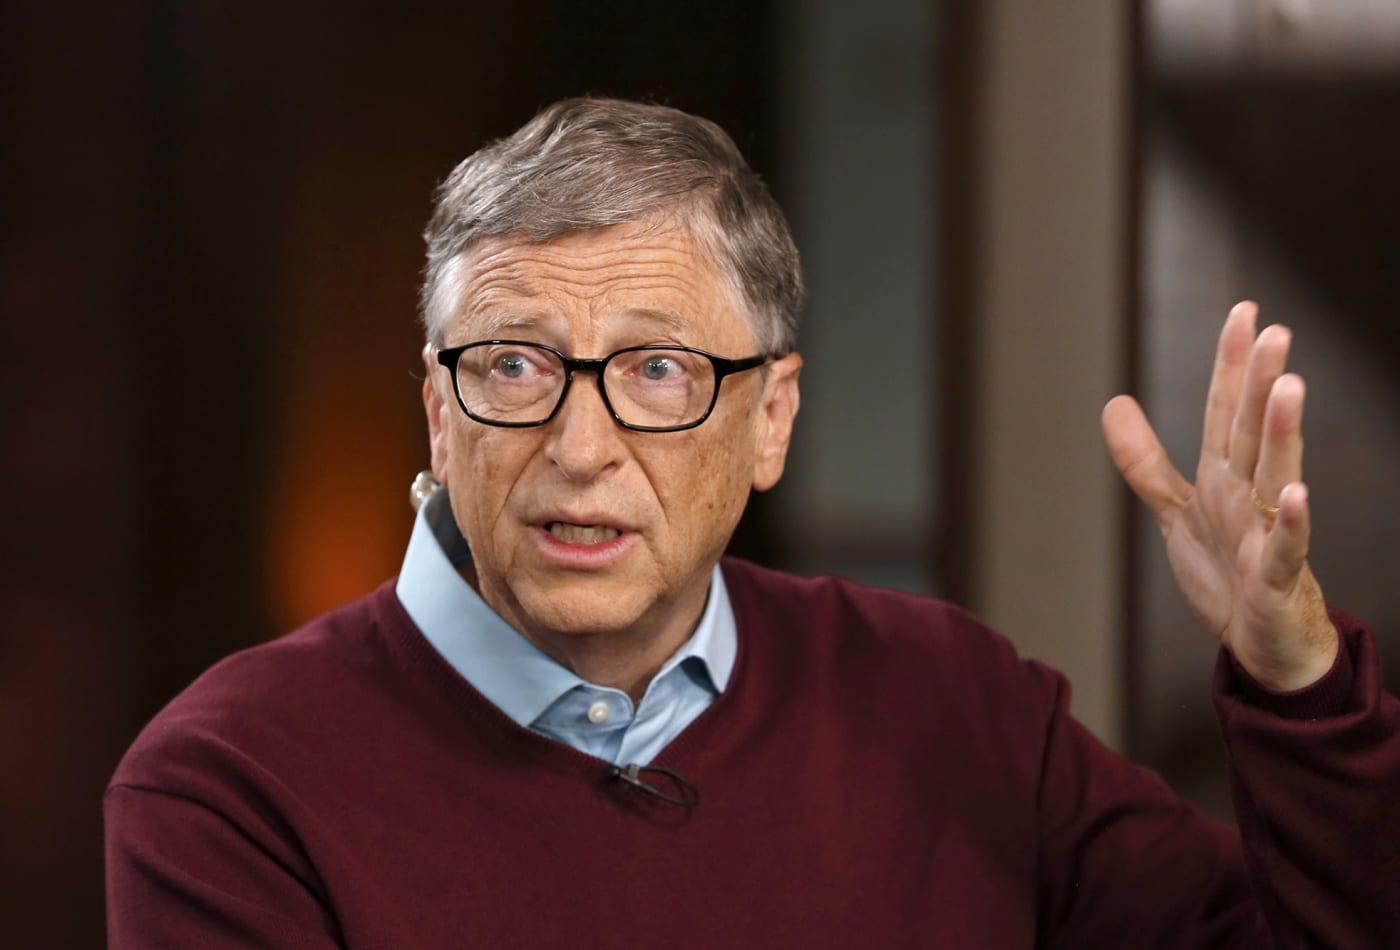 Bill Gates: COVID-19 nuk është asgjë para kësaj krize që po na afrohet